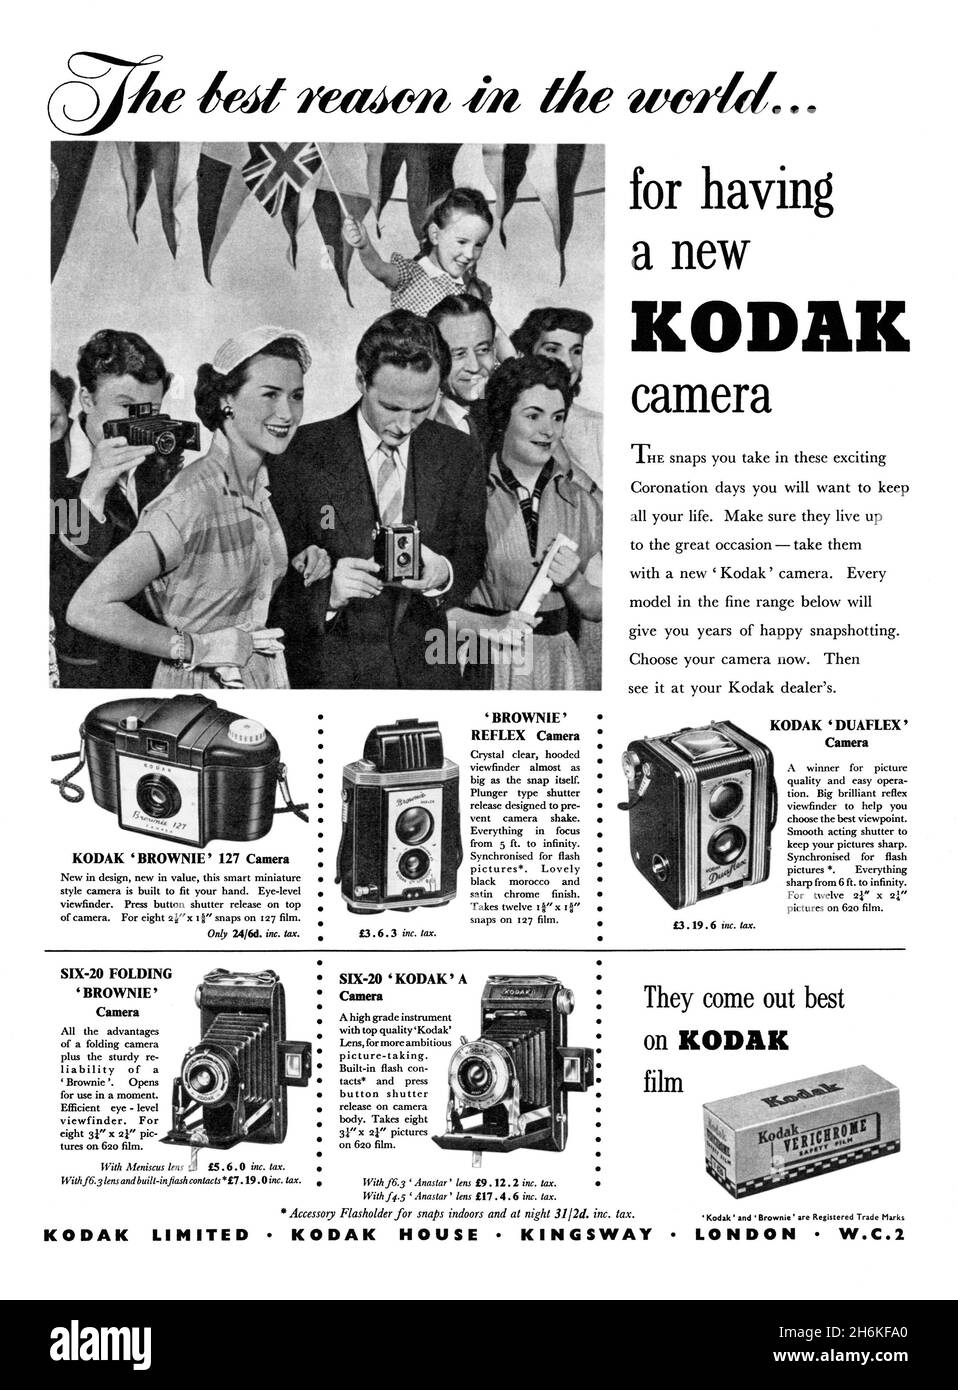 Ein Werbespot von 1950s für Kodak Kameras. Die Anzeige erschien in einer Zeitschrift, die im Mai 1953 in Großbritannien veröffentlicht wurde. Die Fotos zeigen die verschiedenen Kameras der Serie, darunter die berühmten Brownie-Modelle, sowie ihren Verichrome-Film. Das Hauptfoto hat Flaggen und war die Krönung von Königin Elizabeth II. Am 2nd. Juni dieses Jahres – Vintage 1950s Grafiken nur für redaktionelle Verwendung. Stockfoto